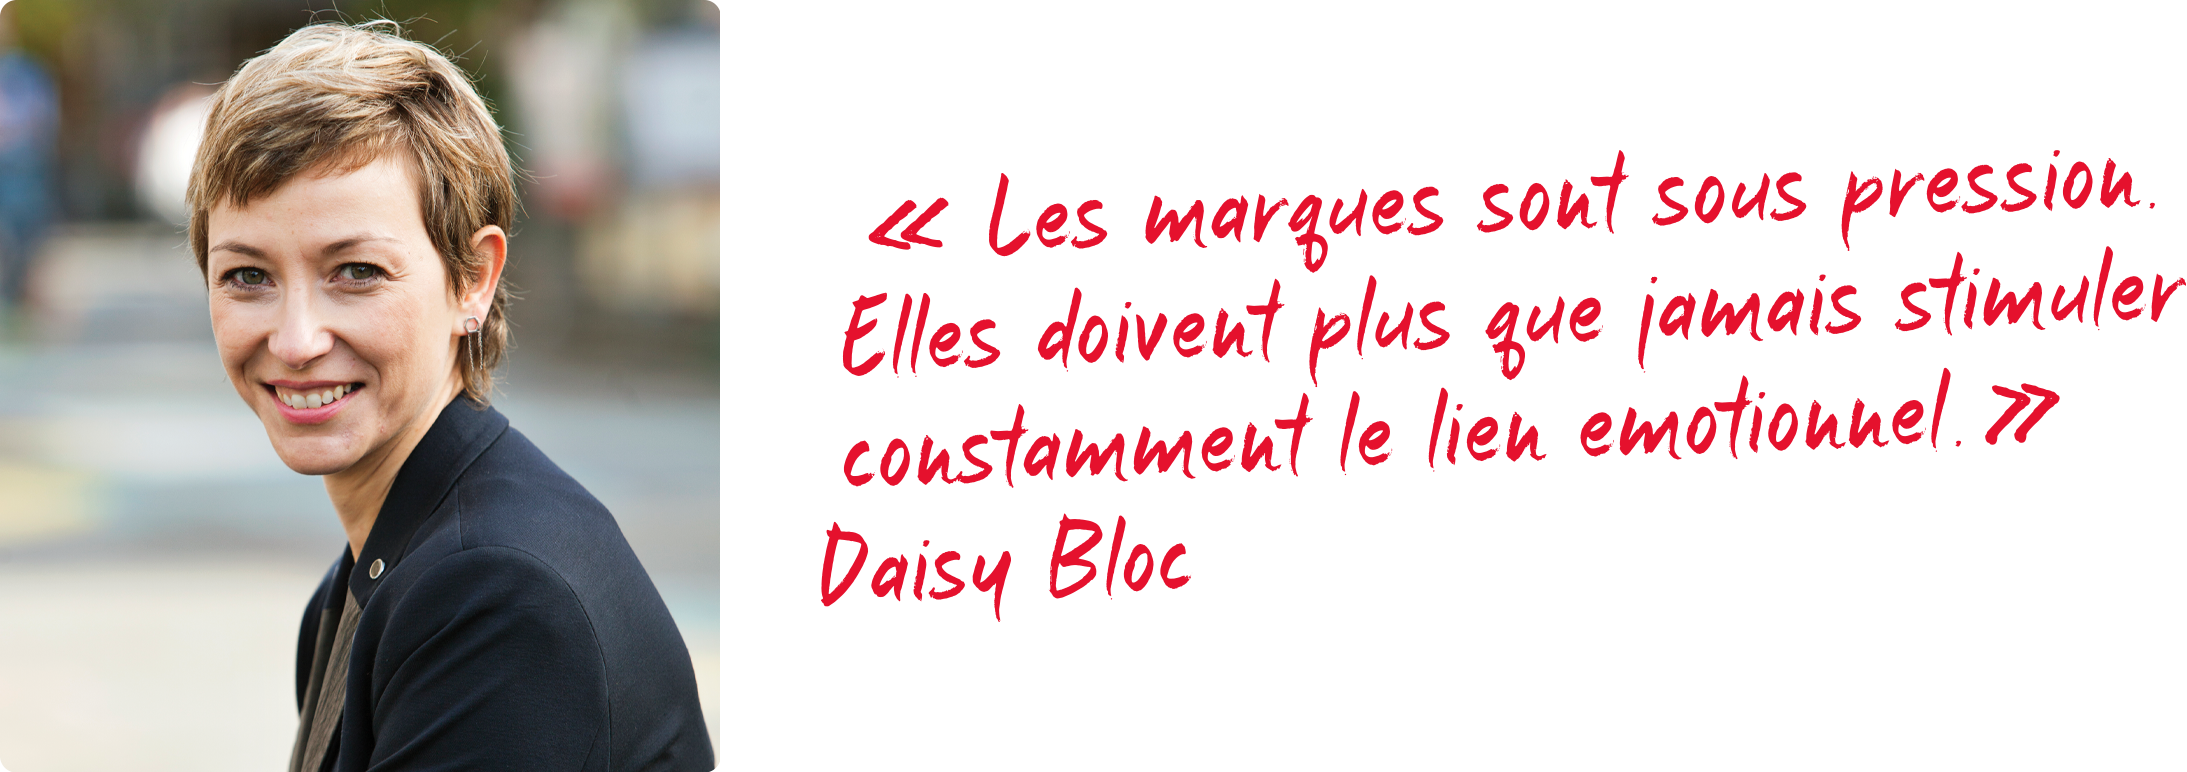 Daisy Bloc